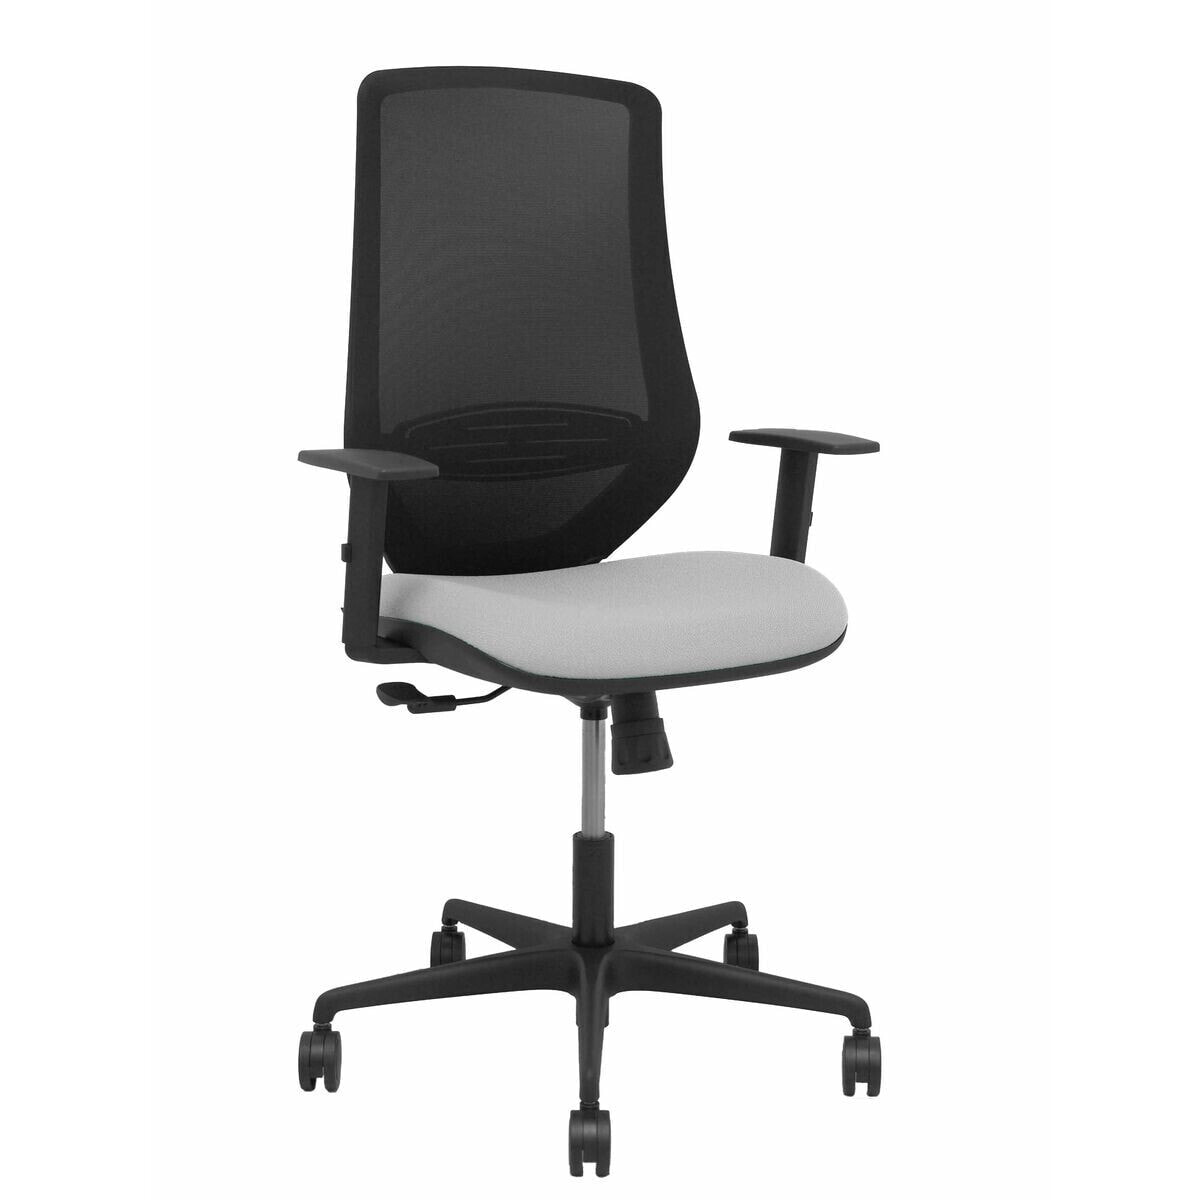 Офисный стул Mardos P&C 0B68R65 Светло-серый